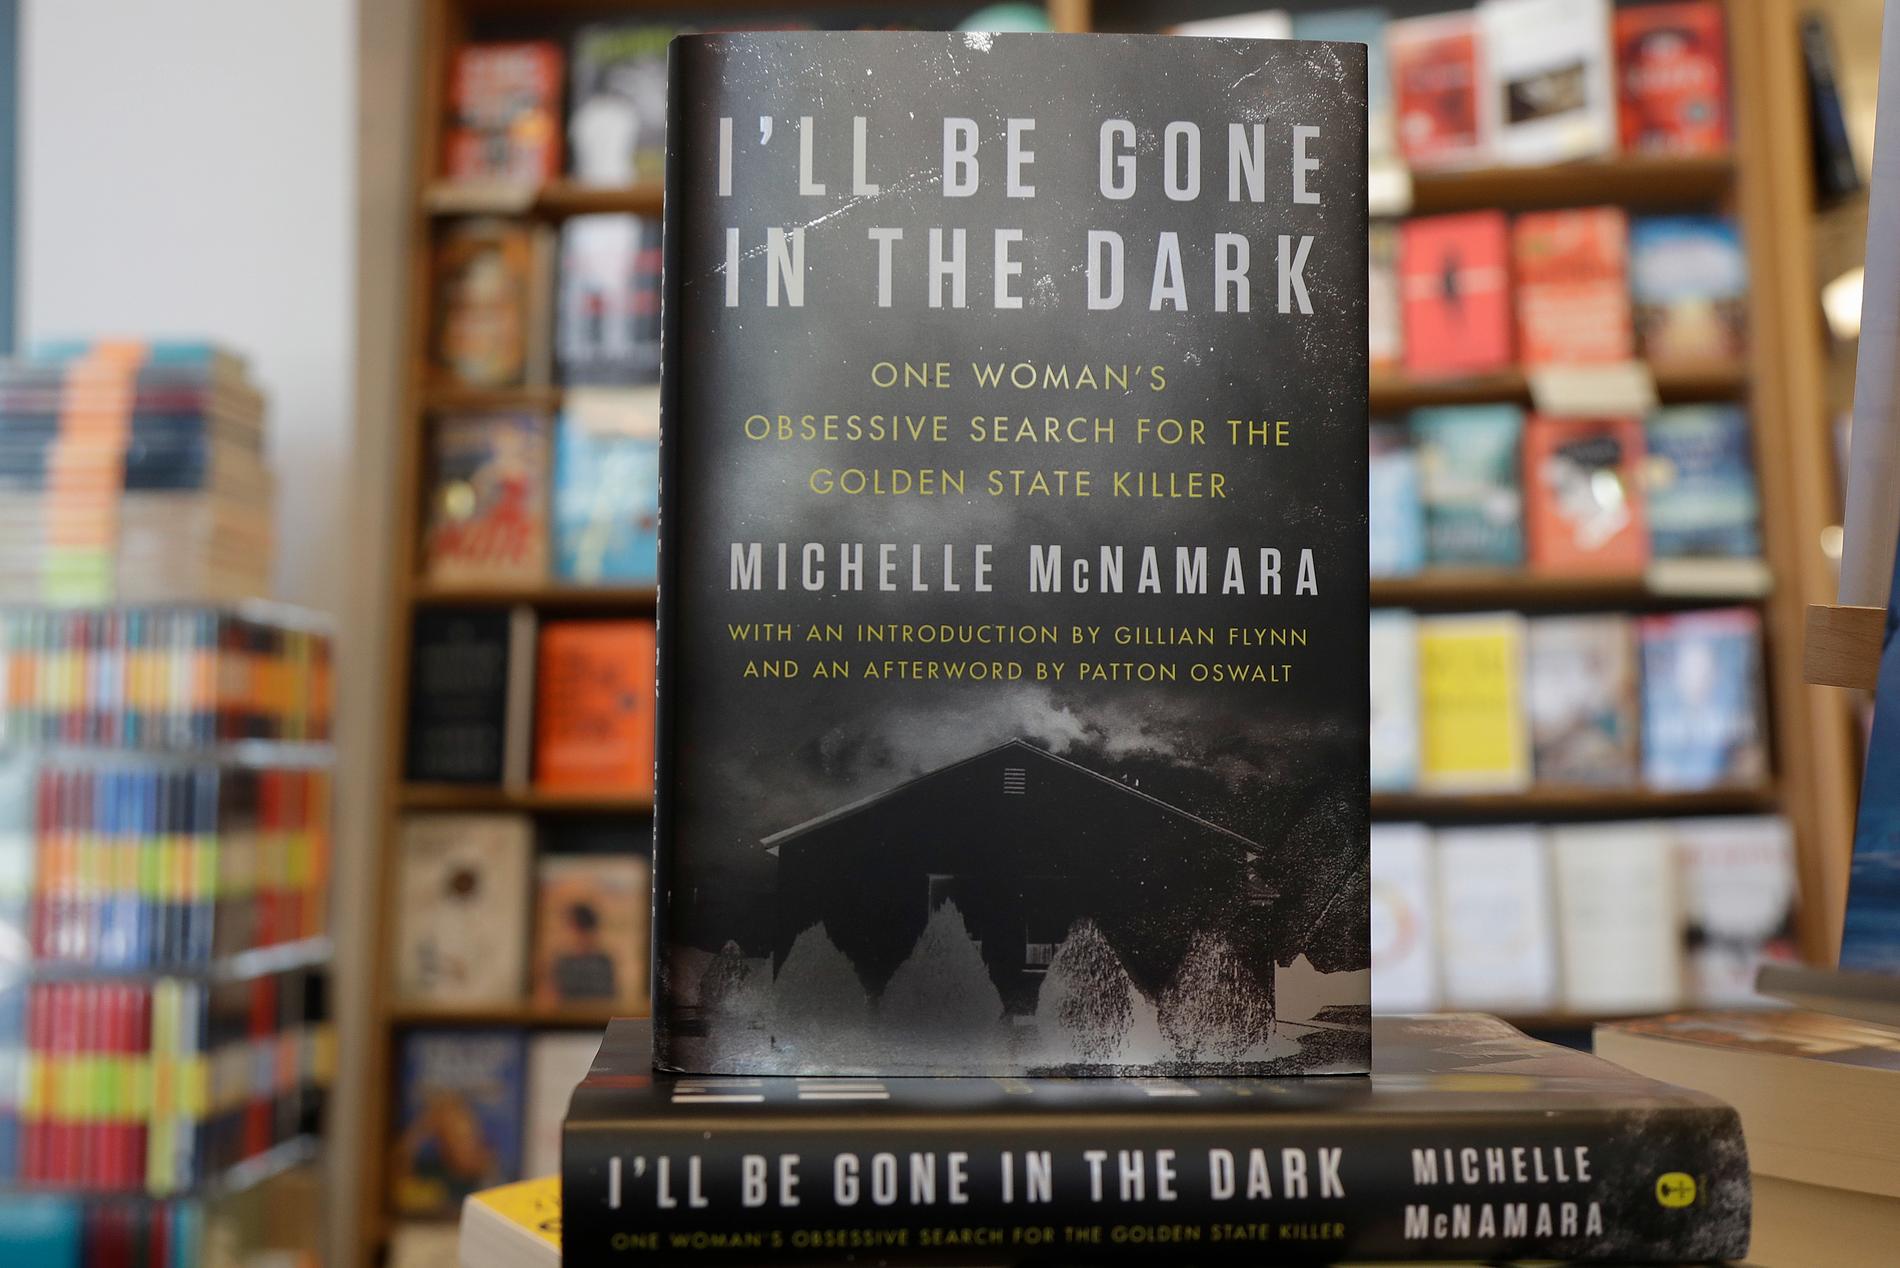 Boken "I'll be gone in the dark", skriven av Michelle McNamara, som dock hann avlida innan den var helt klar.